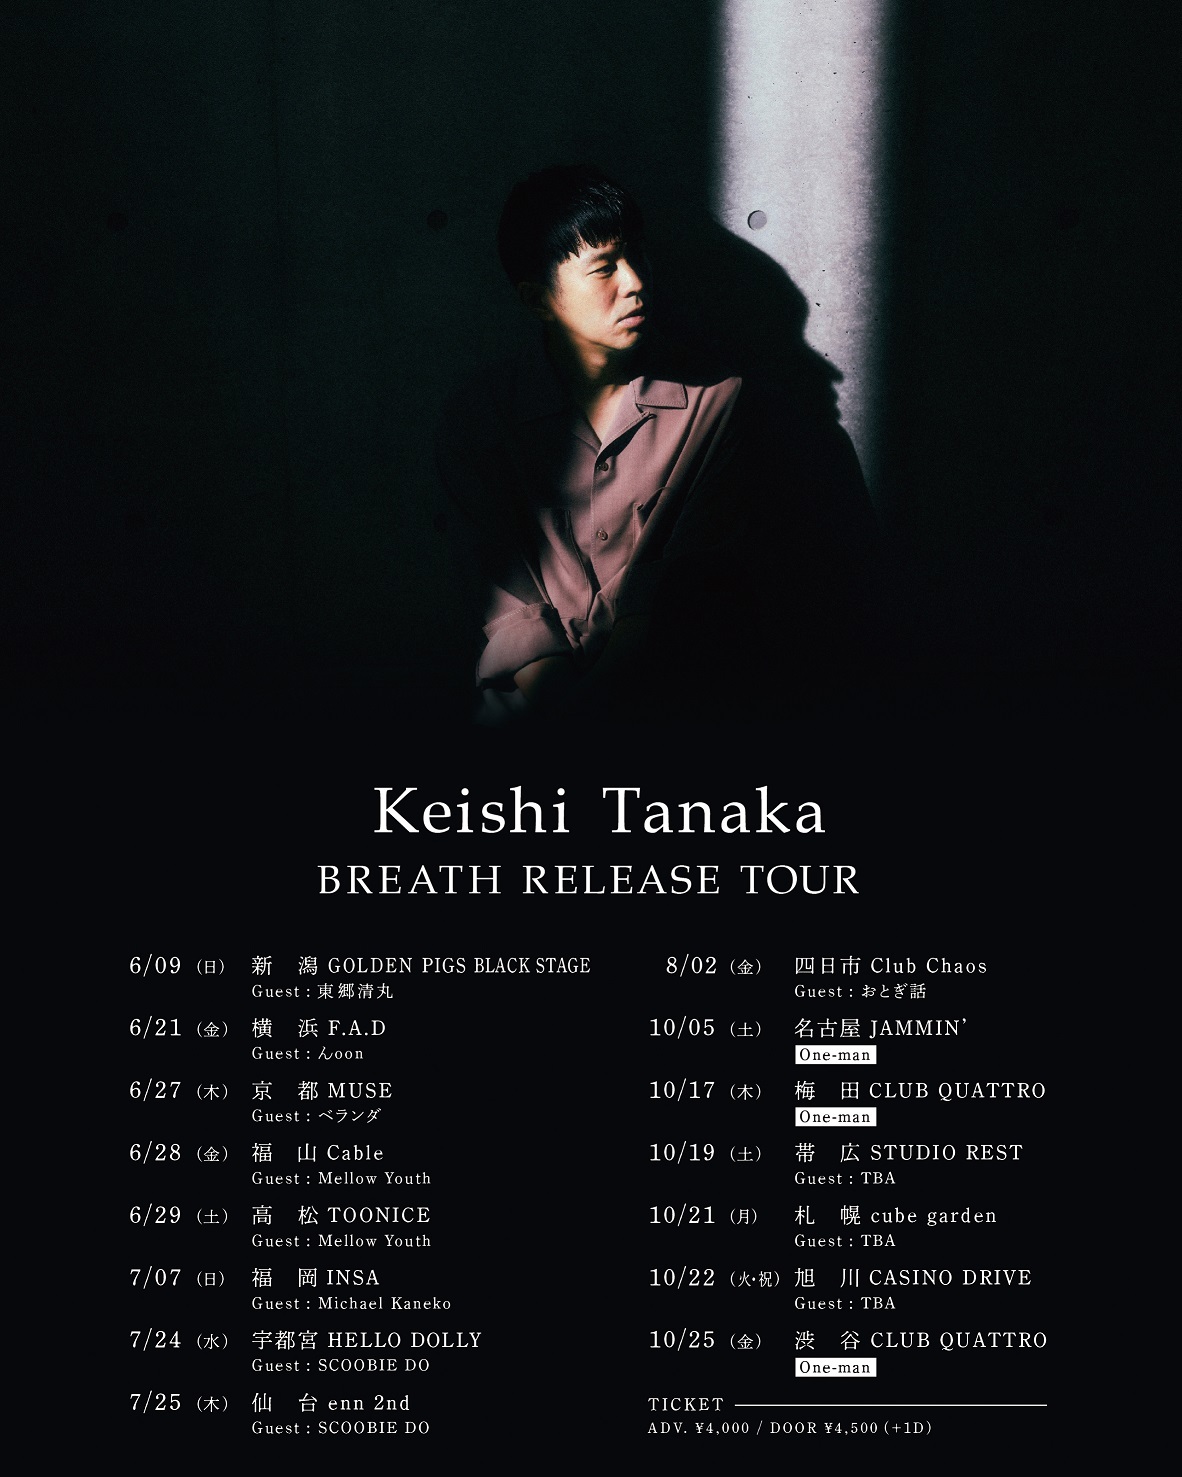 『BREATH RELEASE TOUR』